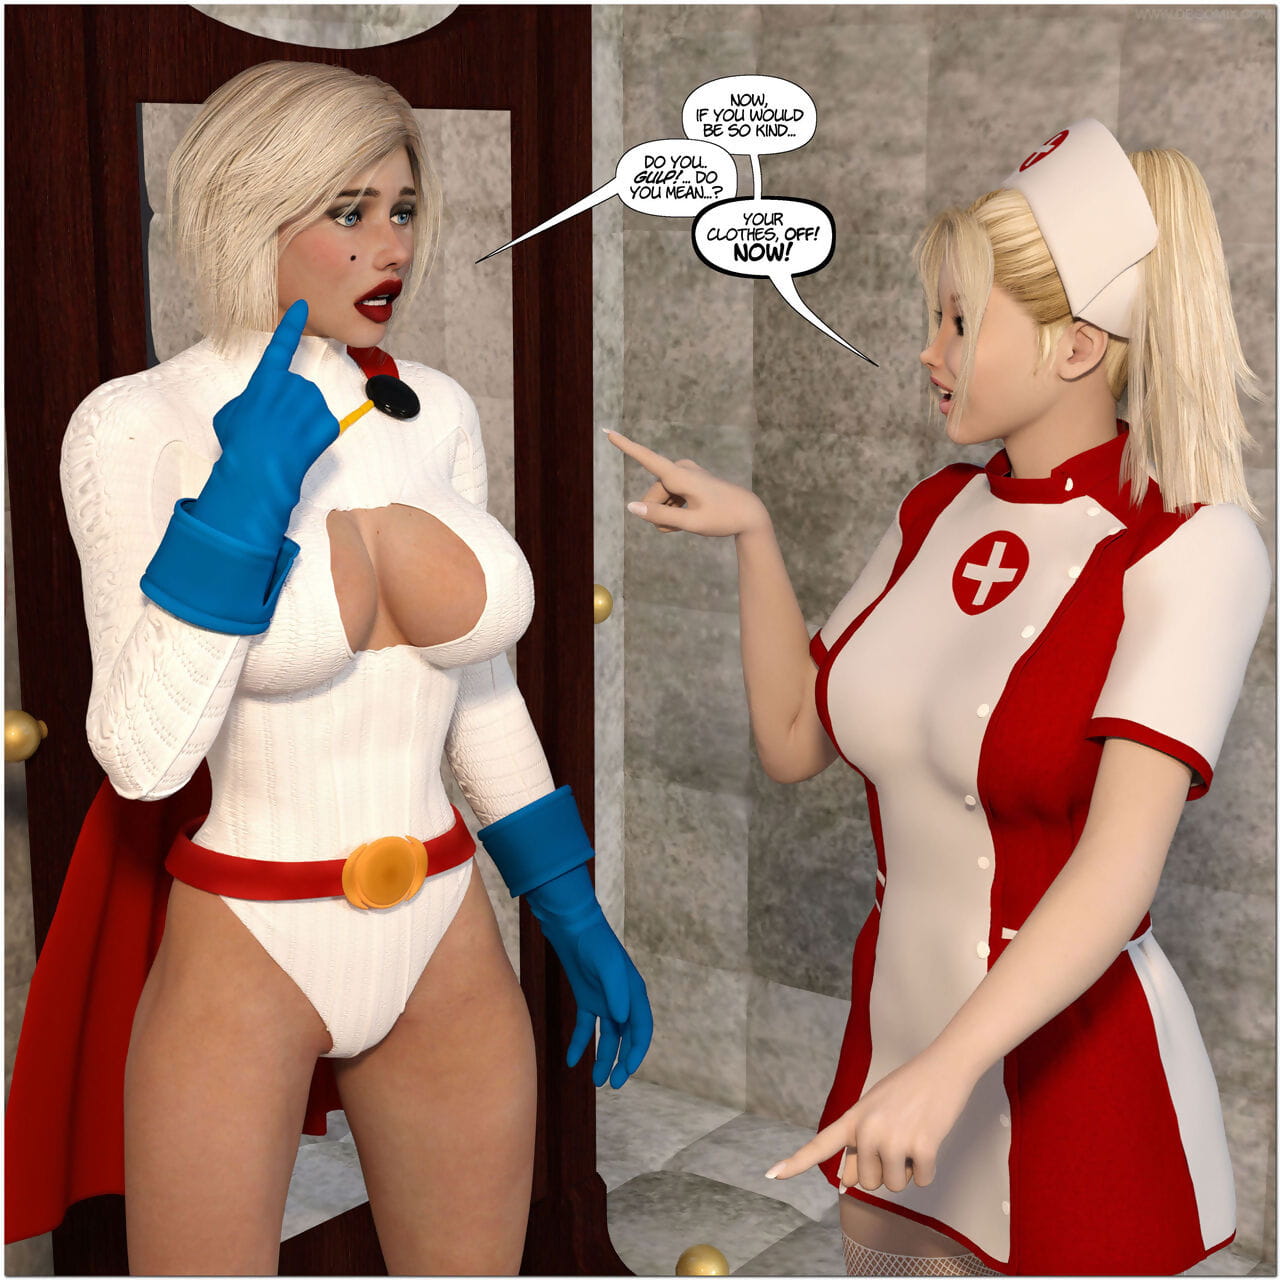 nuevo arkham para superheroines 1 2nd Edición la humillación y la degradación de los de el poder Chica page 1